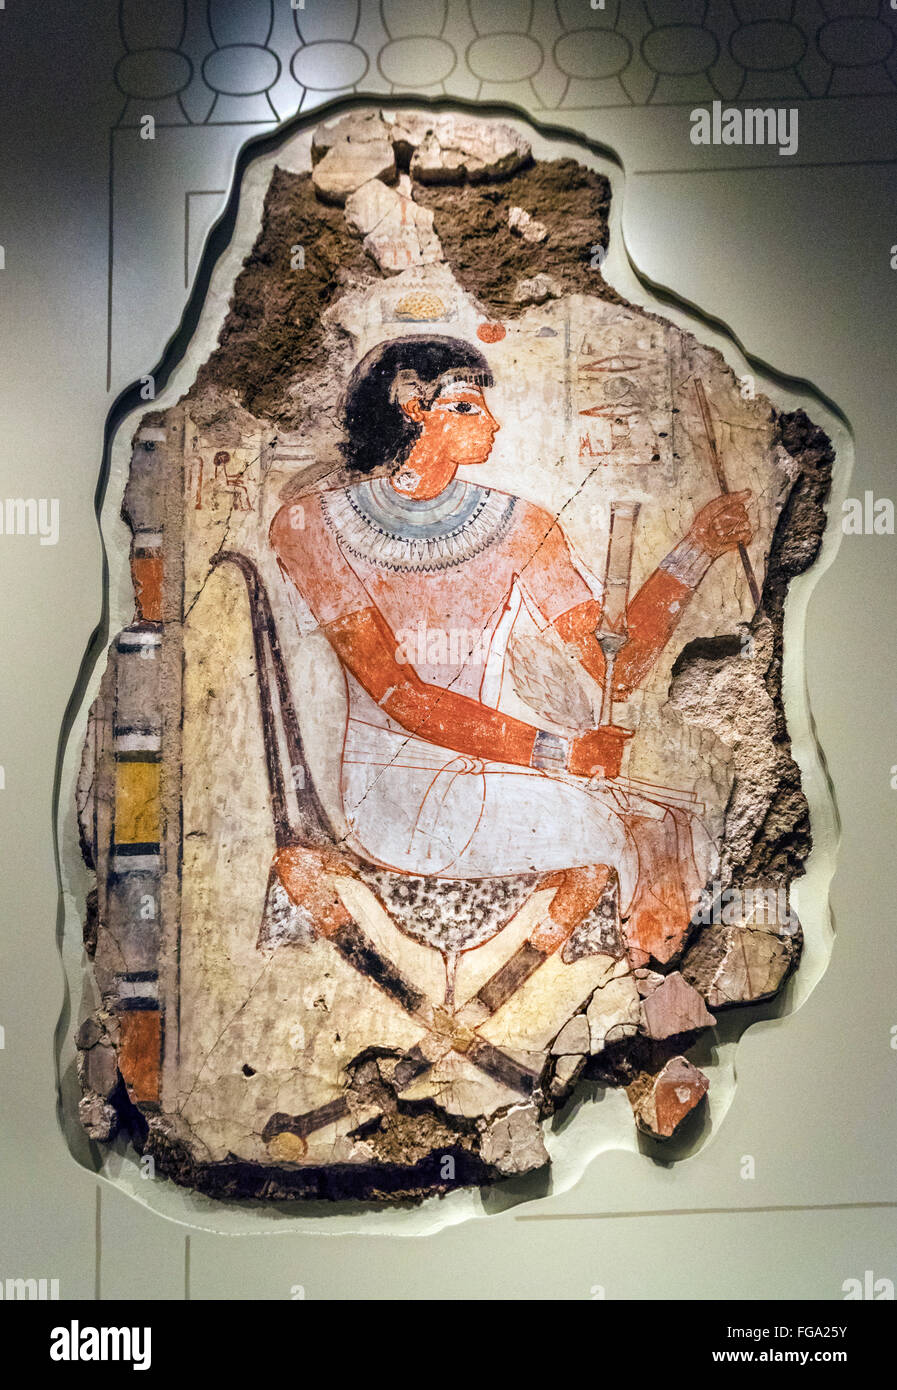 Son affichage Nebamun les oies et les bovins, une peinture murale de la tombe de Nebamun à Thèbes, British Museum, Londres, Angleterre, Royaume-Uni Banque D'Images